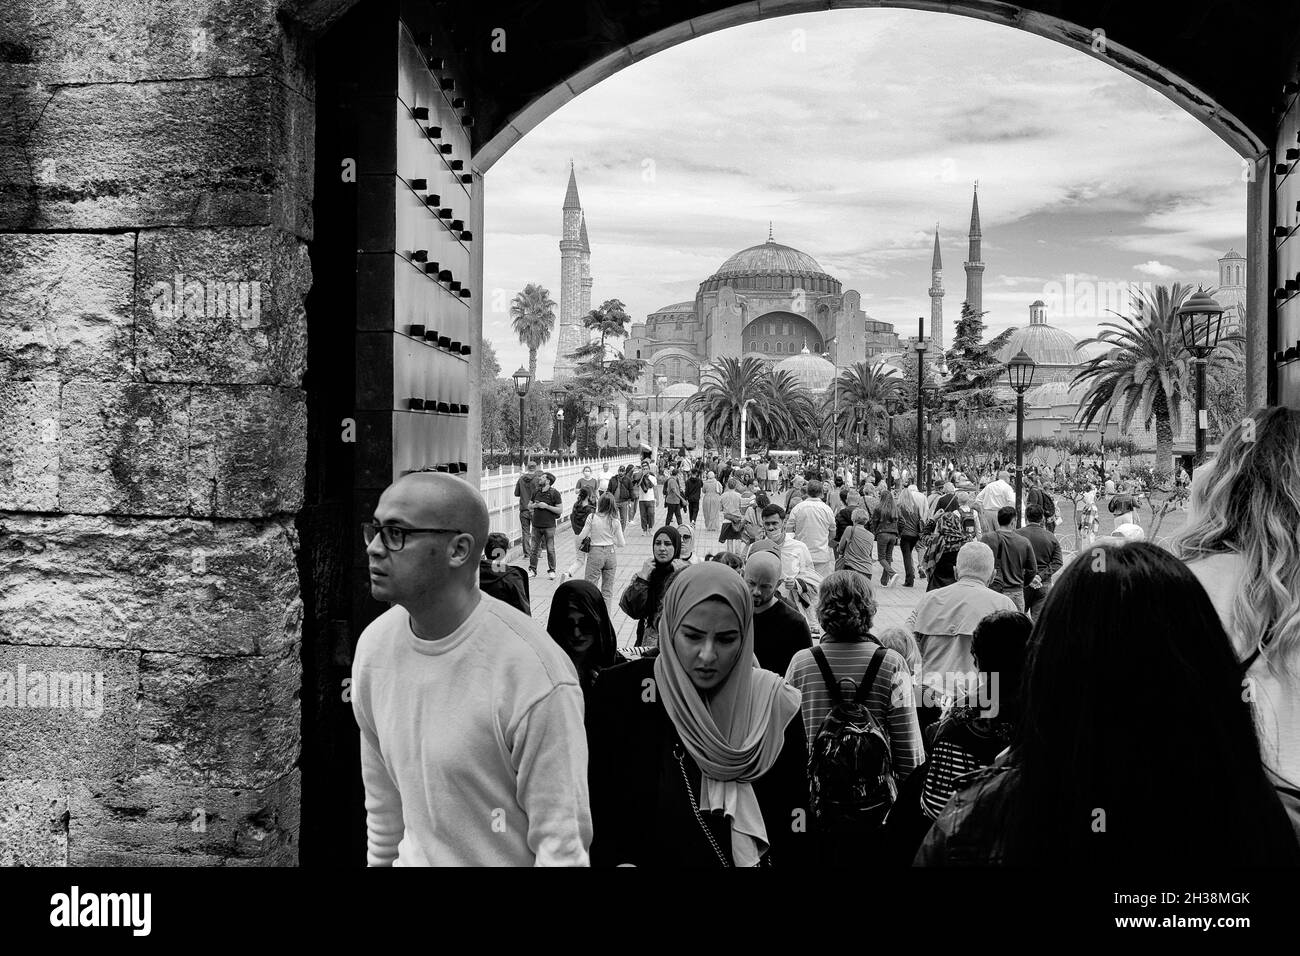 Touristen kommen durch eine Tür, die zur Blauen Moschee in der Nähe der Hagia Sophia in Istanbul, Türkei, in Schwarz und Weiß führt Stockfoto